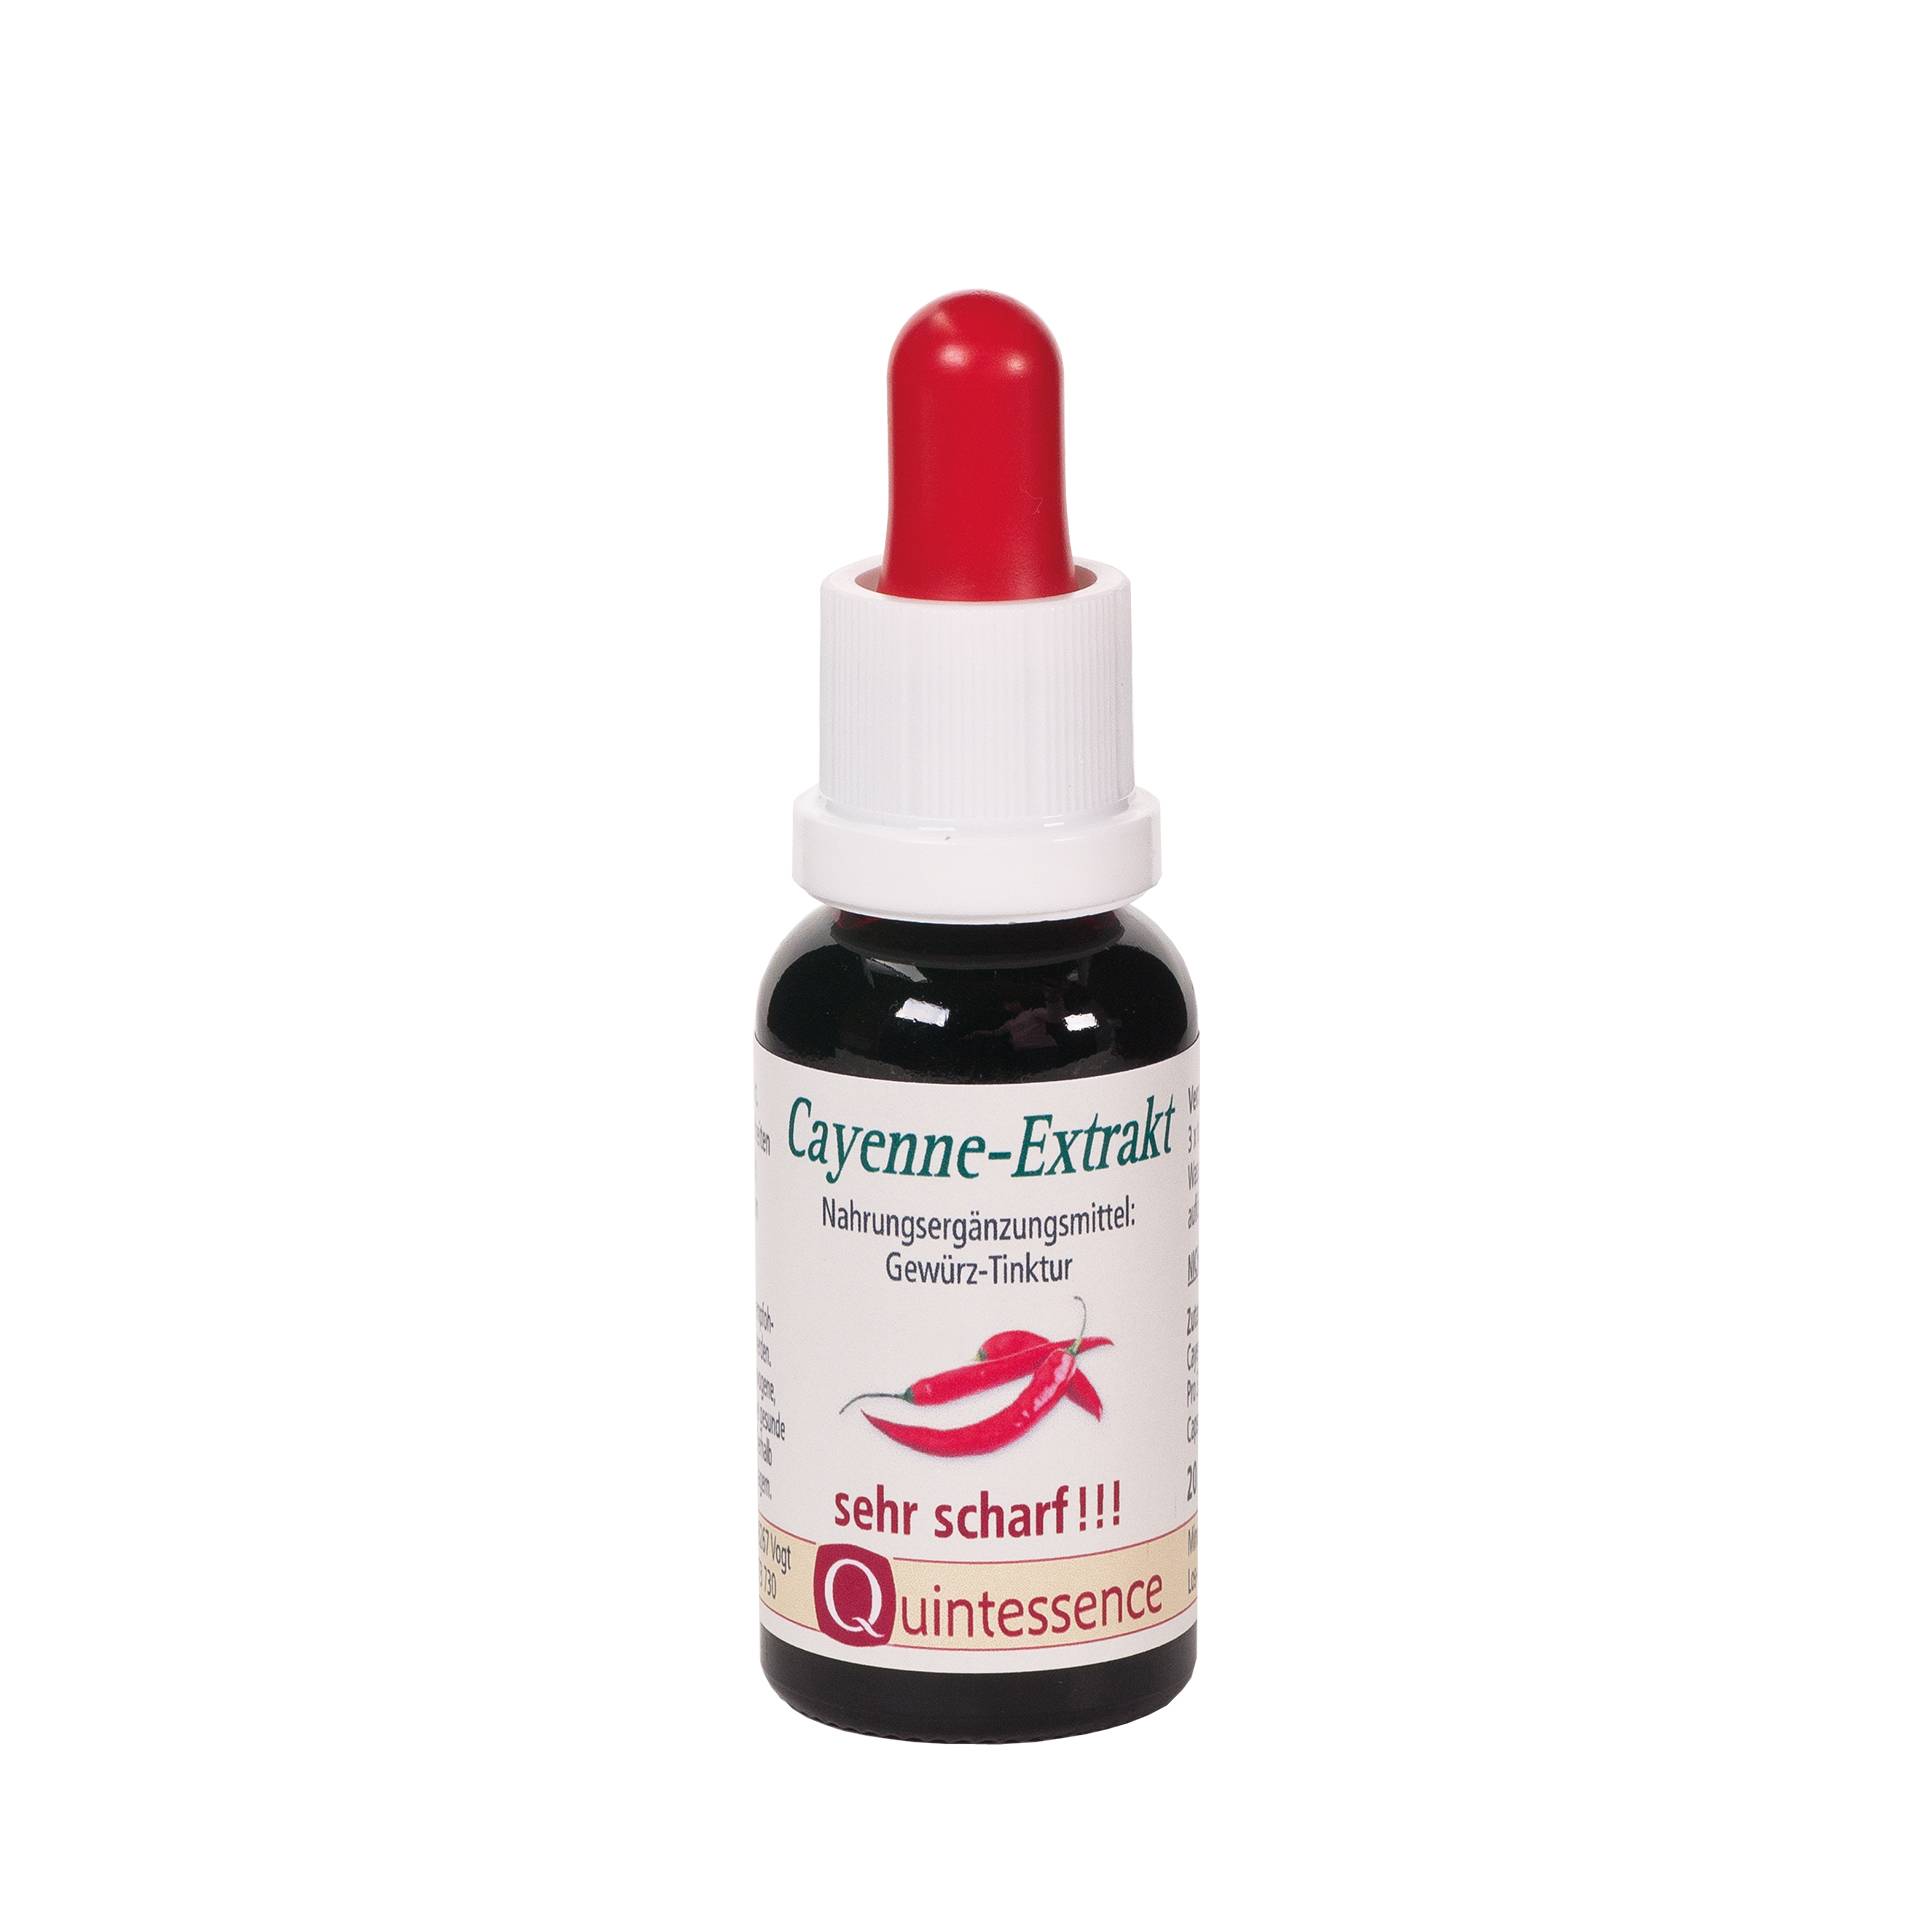 Cayenne-Extrakt 20 ml - Tinktur - Sehr scharf - Mit wertvollen Capsaicinoide - Vegan - Quintessence von Quintessence